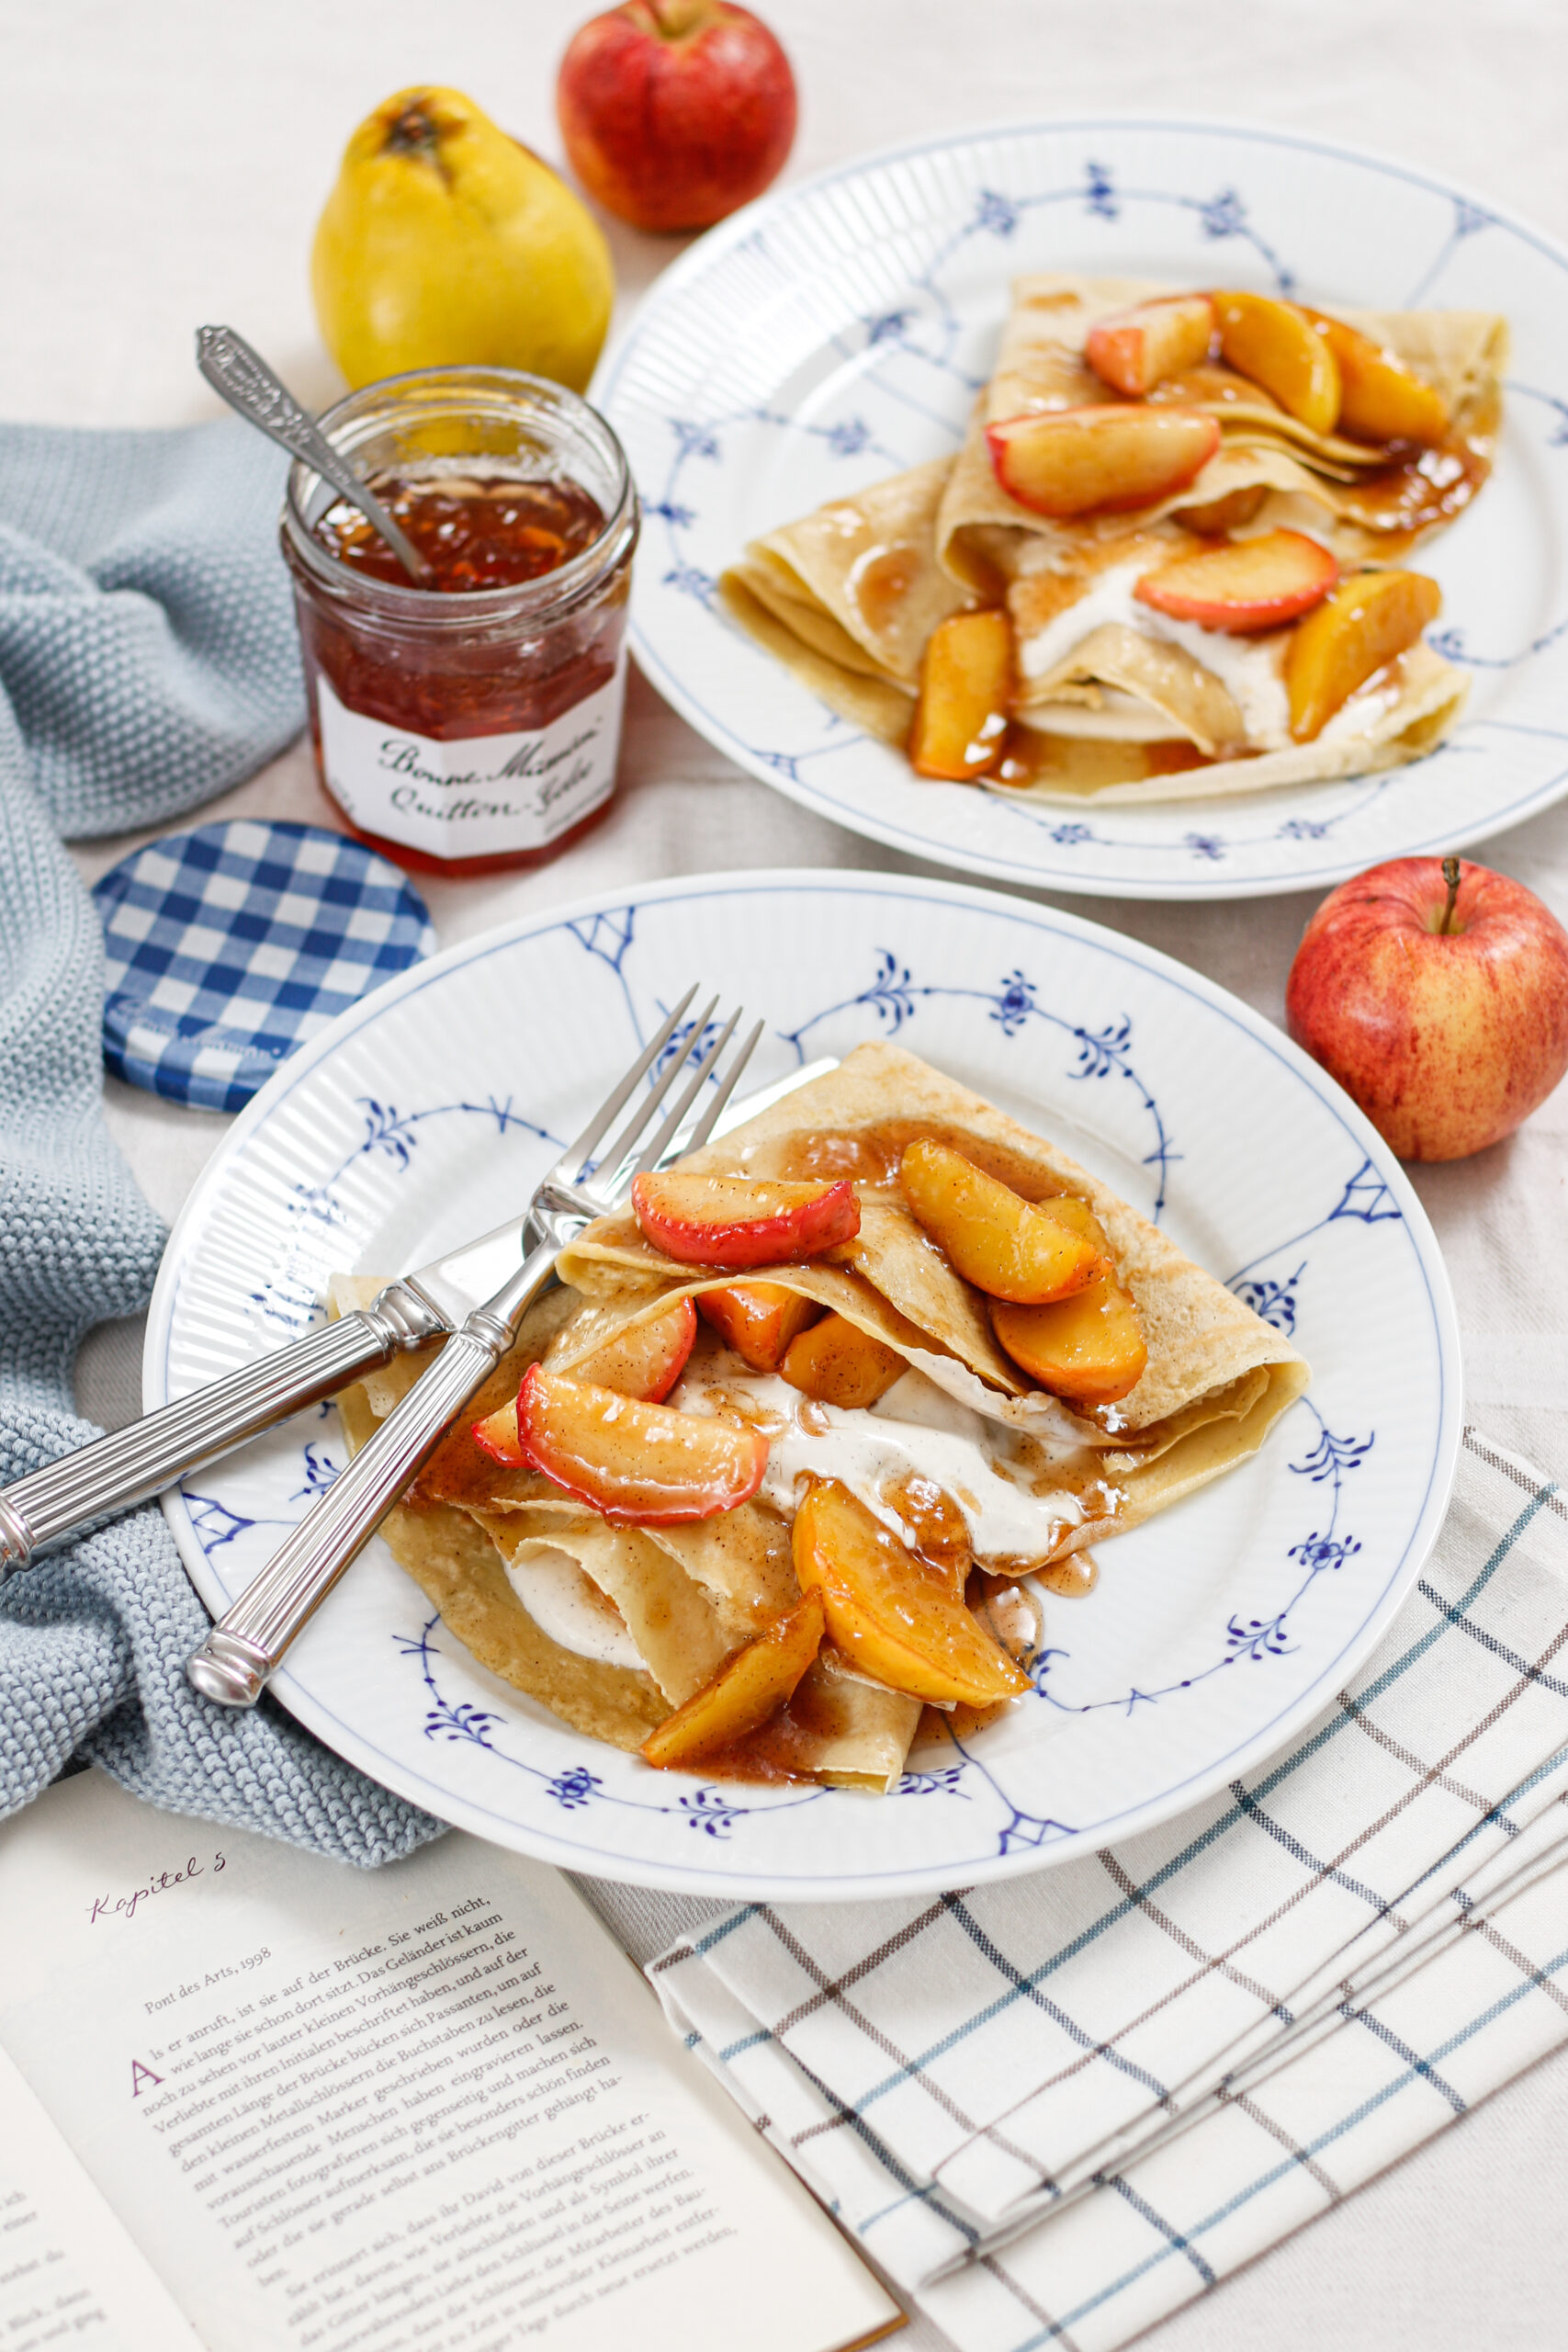 Jemné palačinky s karamelizovanými jablky s kdoulovým želé a vanilkovou zakysanou smetanou